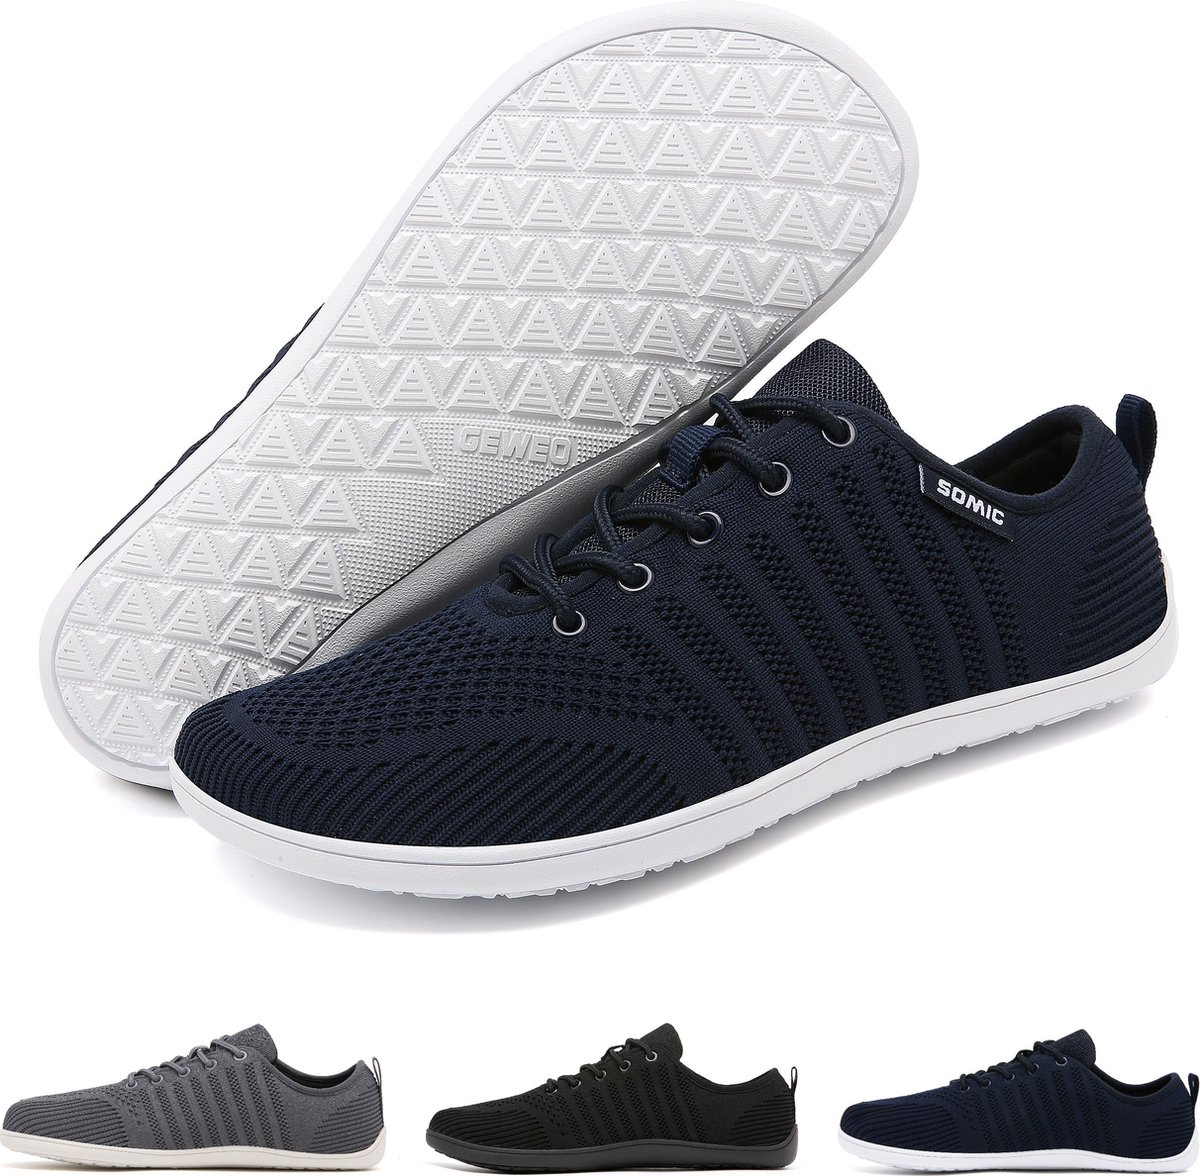 Somic Barefoot Schoenen - Sportschoenen Sneakers - Fitnessschoenen - Hardloopschoenen - Ademend Knit Textiel - Platte Zool - Blauw - Maat 43